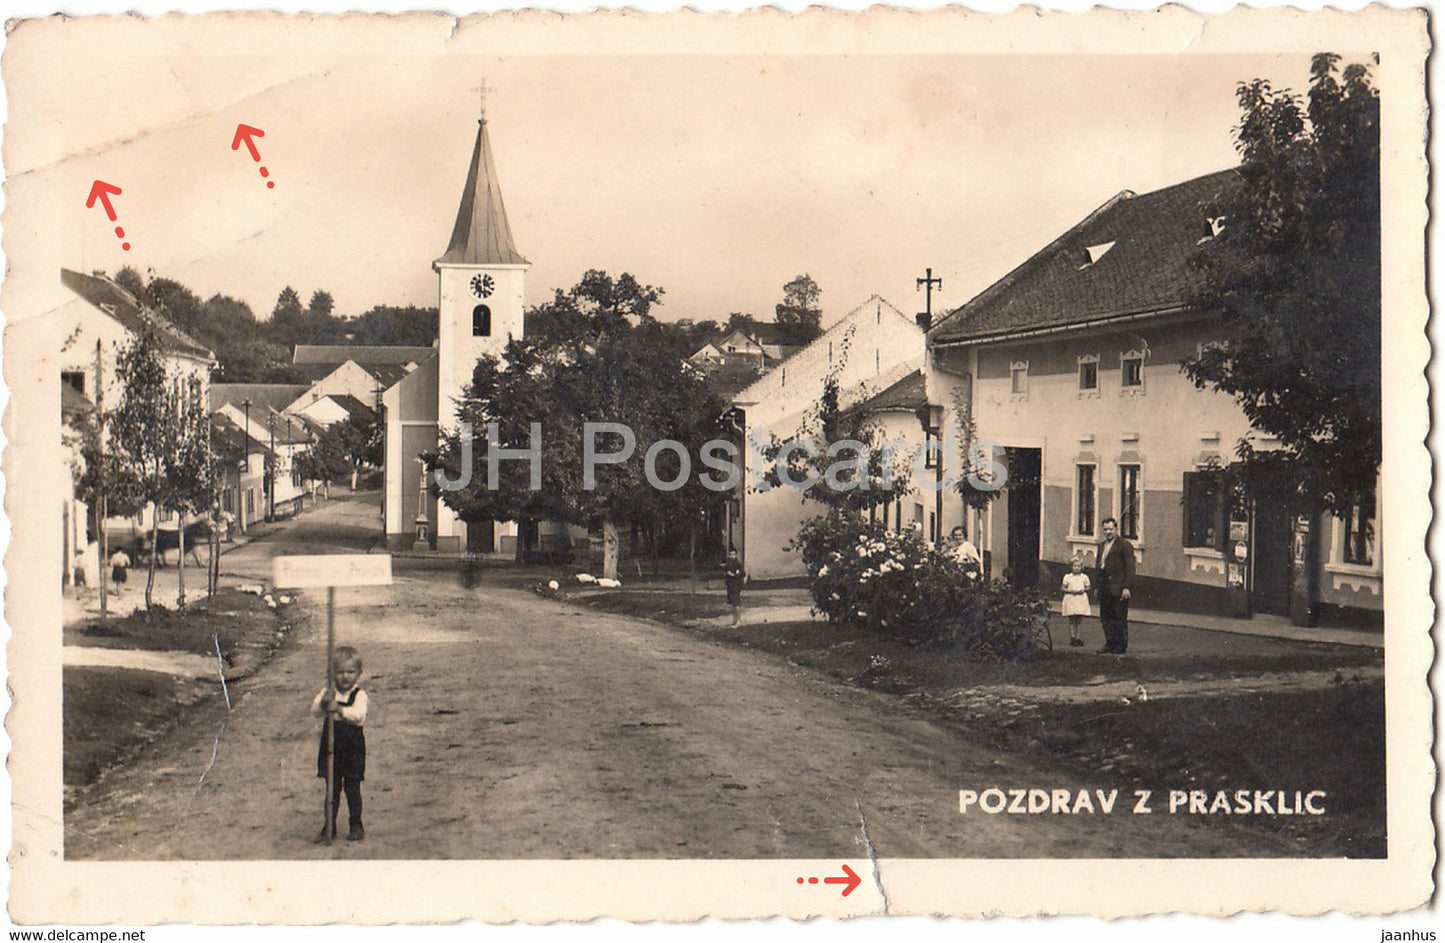 Pozdrav z Prasklic - Prasklice - old postcard - Czech Republic - Czechoslovakia - used - JH Postcards